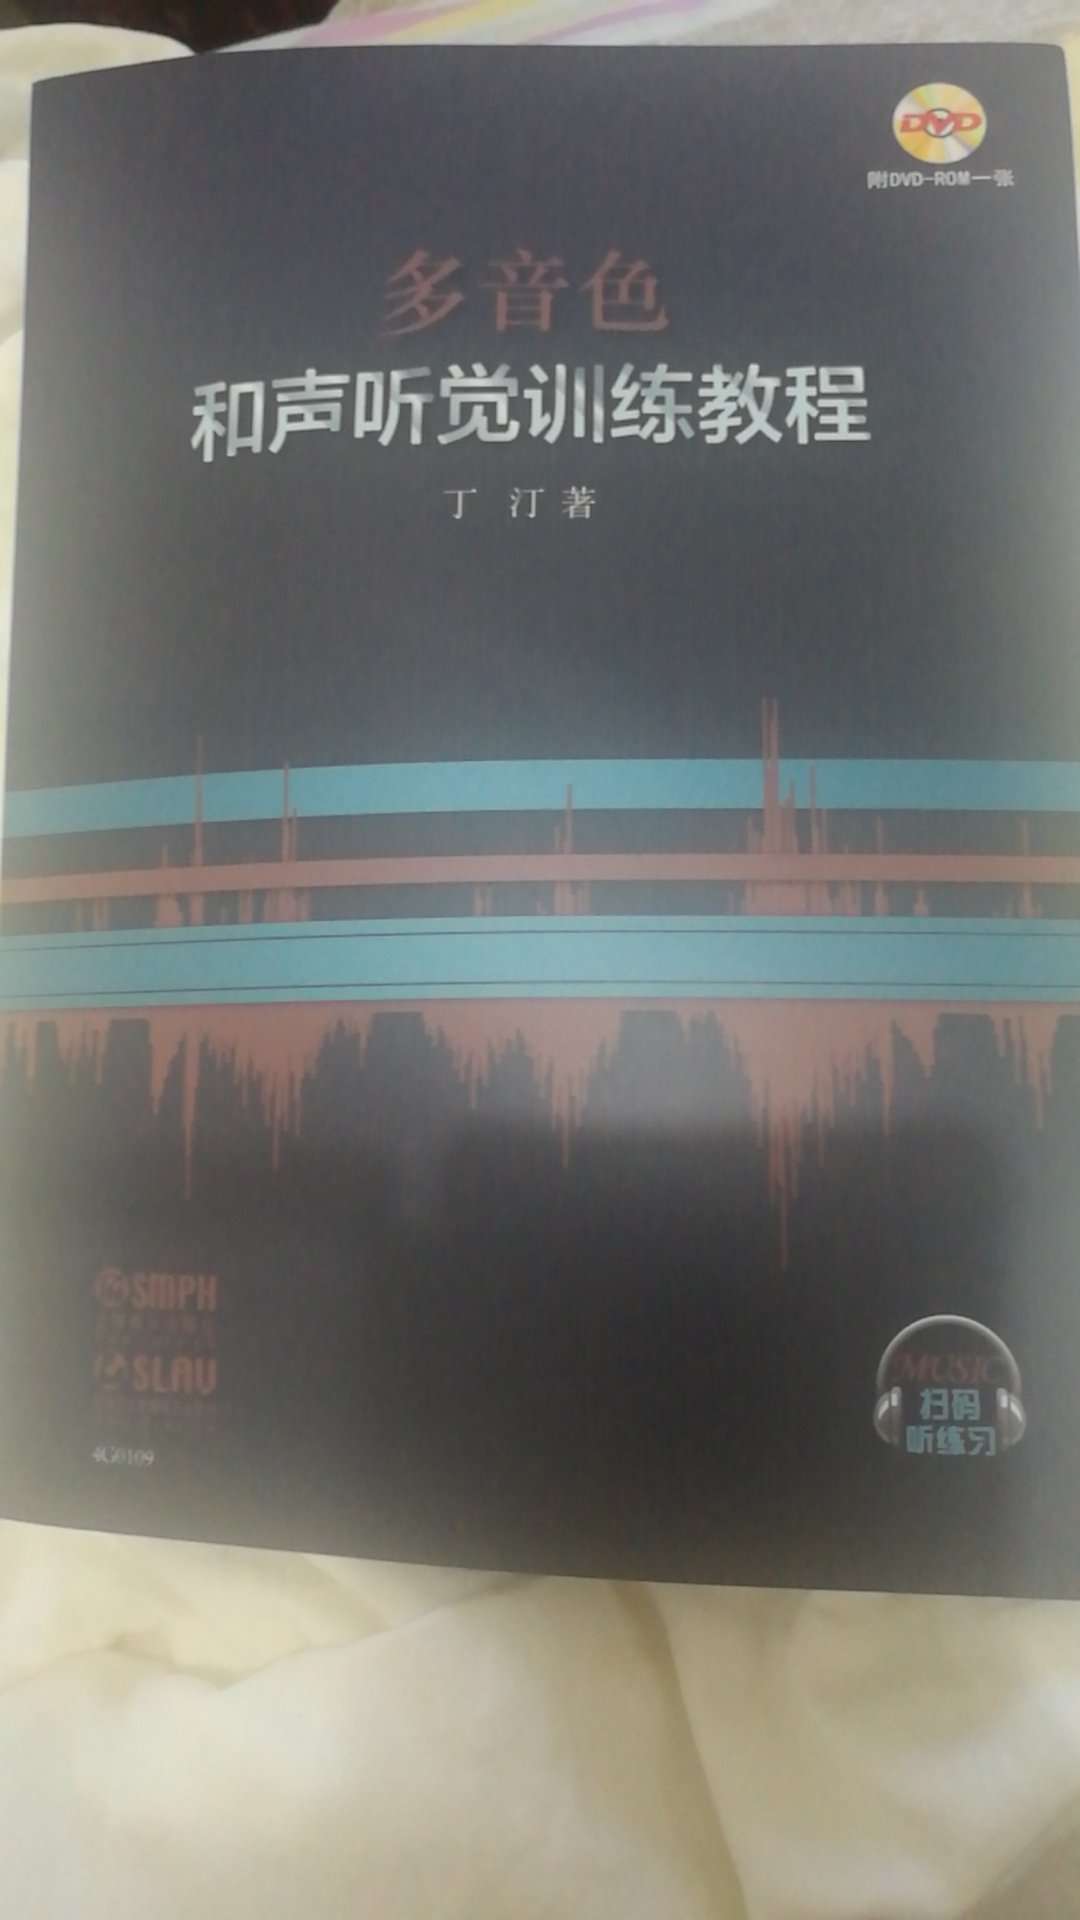 经常去上海音乐学院 书应该很好 期待学习